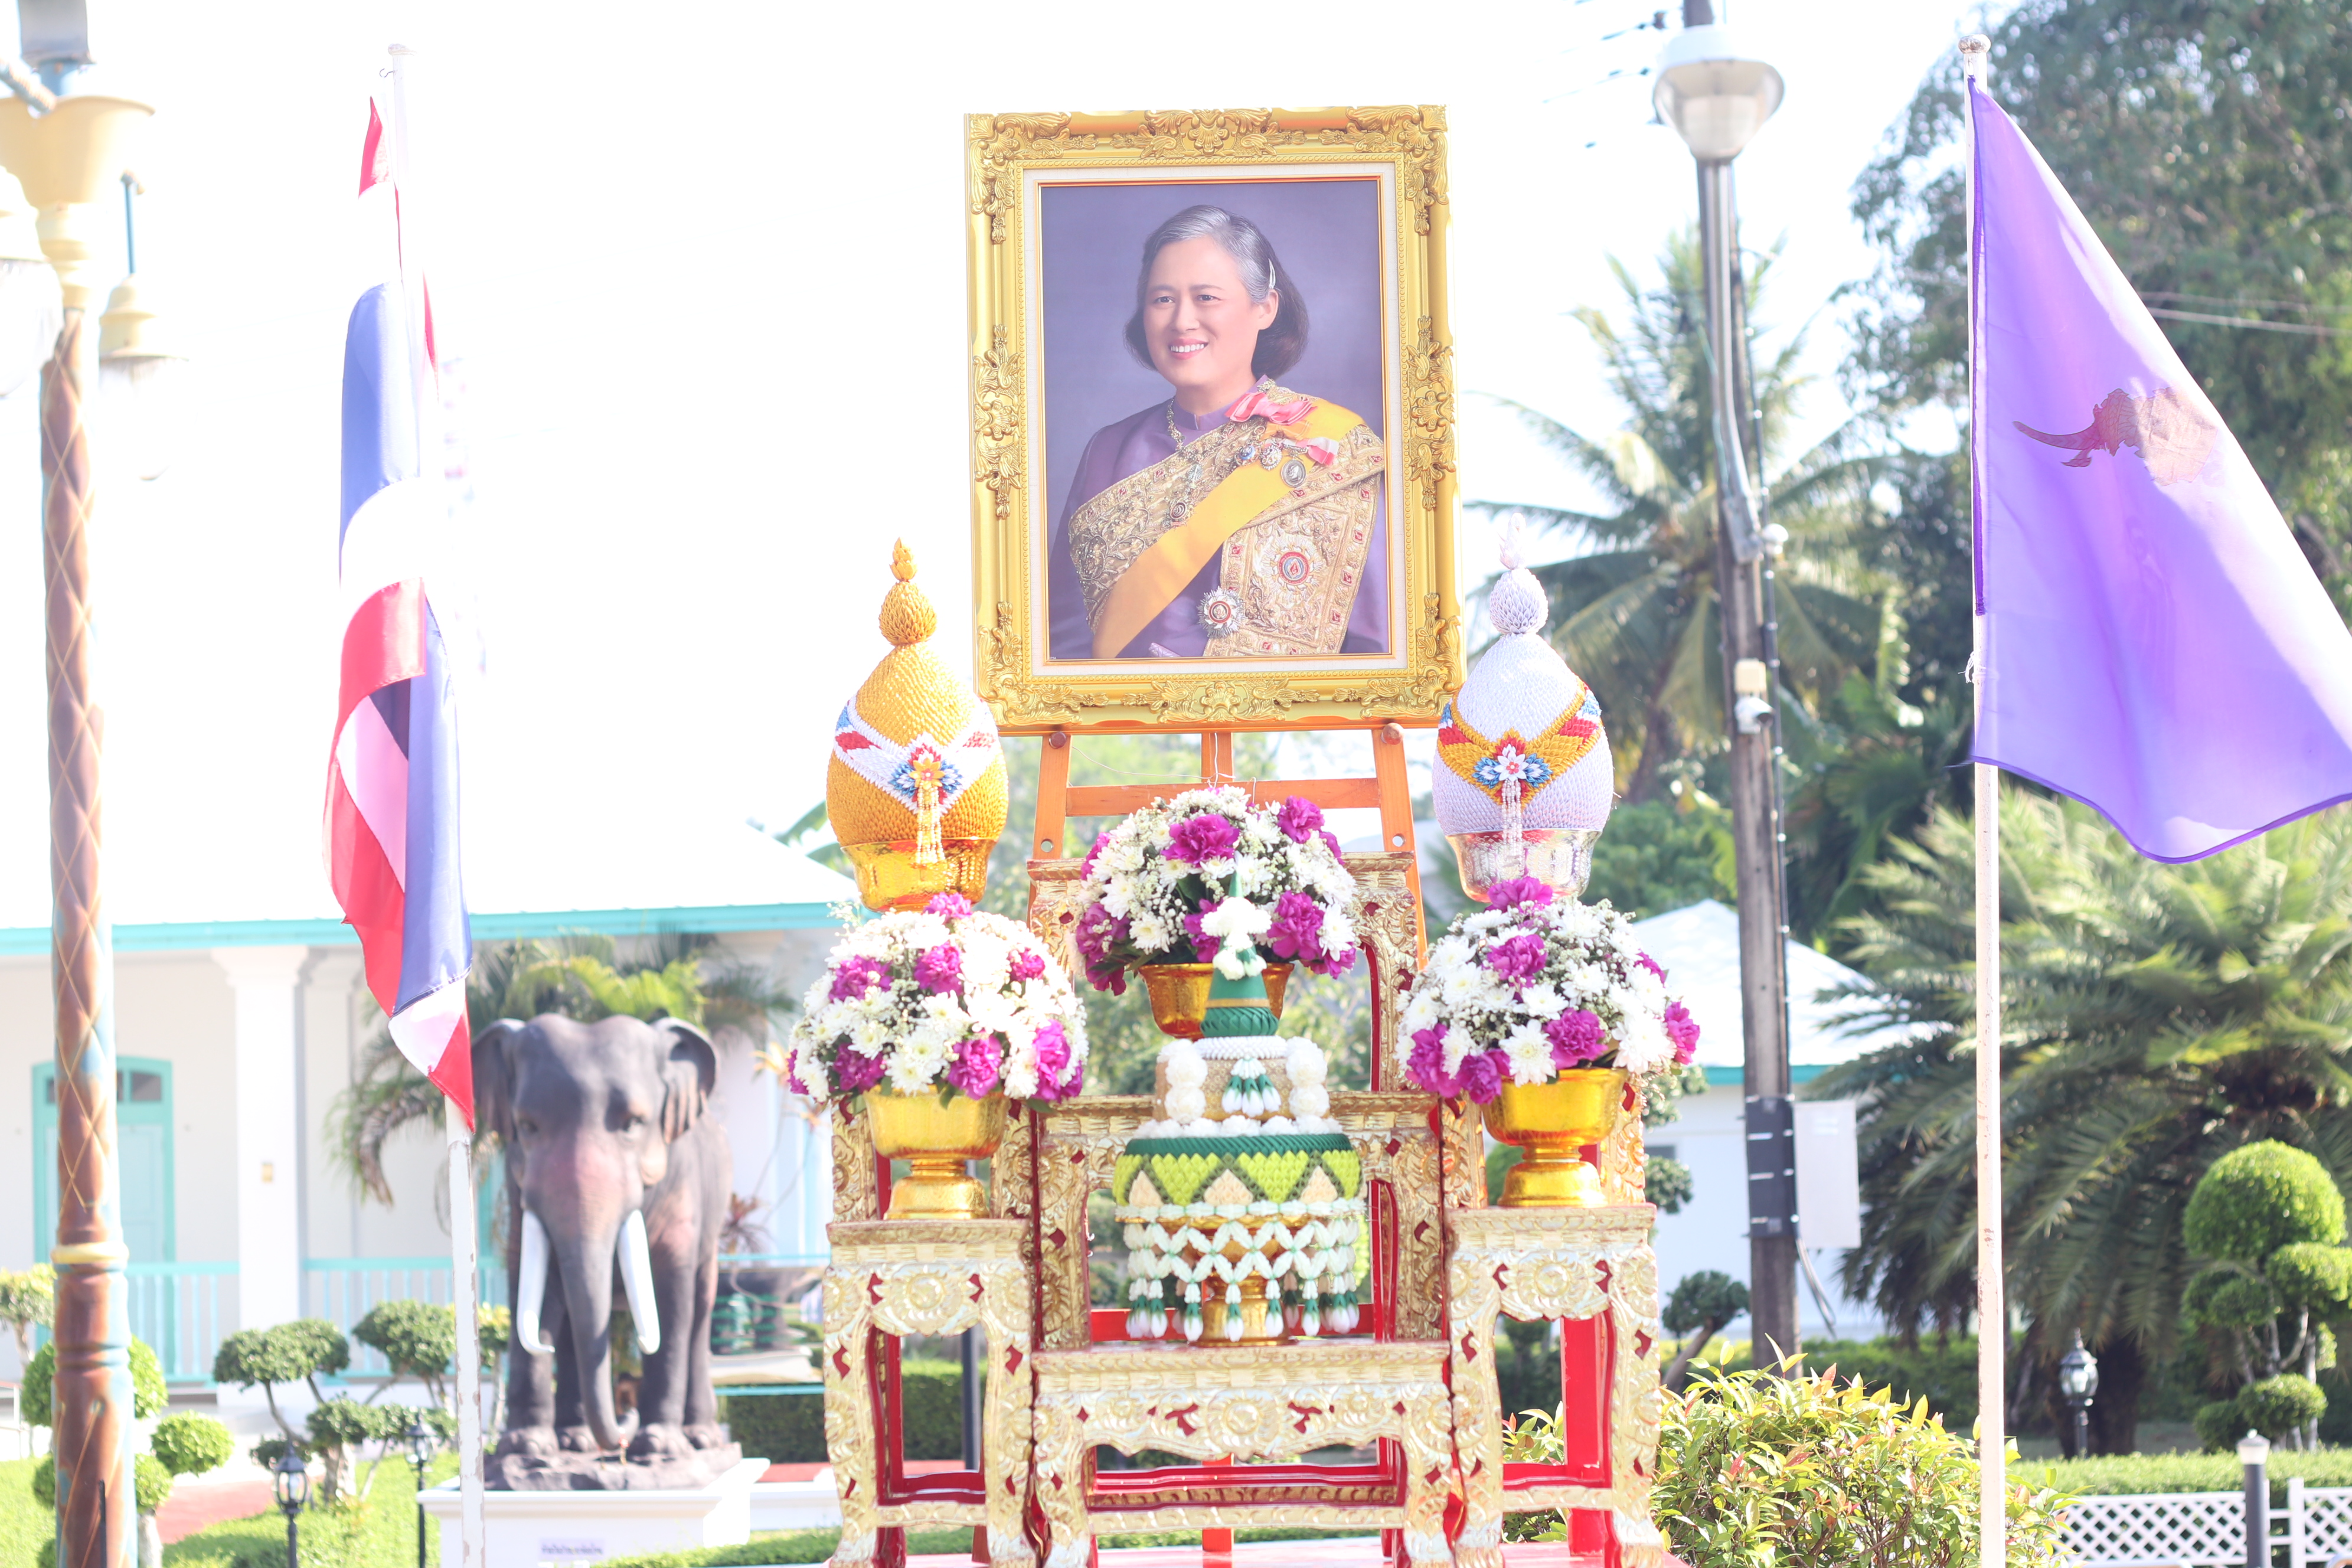 จังหวัดสตูล จัดโครงการรณรงค์ดูแลรักษามรดกศิลปวัฒนธรรมของชาติ เนื่องในวันอนุรักษ์มรดกไทย ประจำปี พ.ศ.2567 เพื่อเฉลิมพระเกียรติสมเด็จพระกนิษฐาธิราชเจ้า กรมสมเด็จพระเทพ รัตนราชสุดาฯ สยามบรมราชกุมารี ในฐานะที่ทรงเป็นองค์อุปถัมภ์การอนุรักษ์มรดกไทย